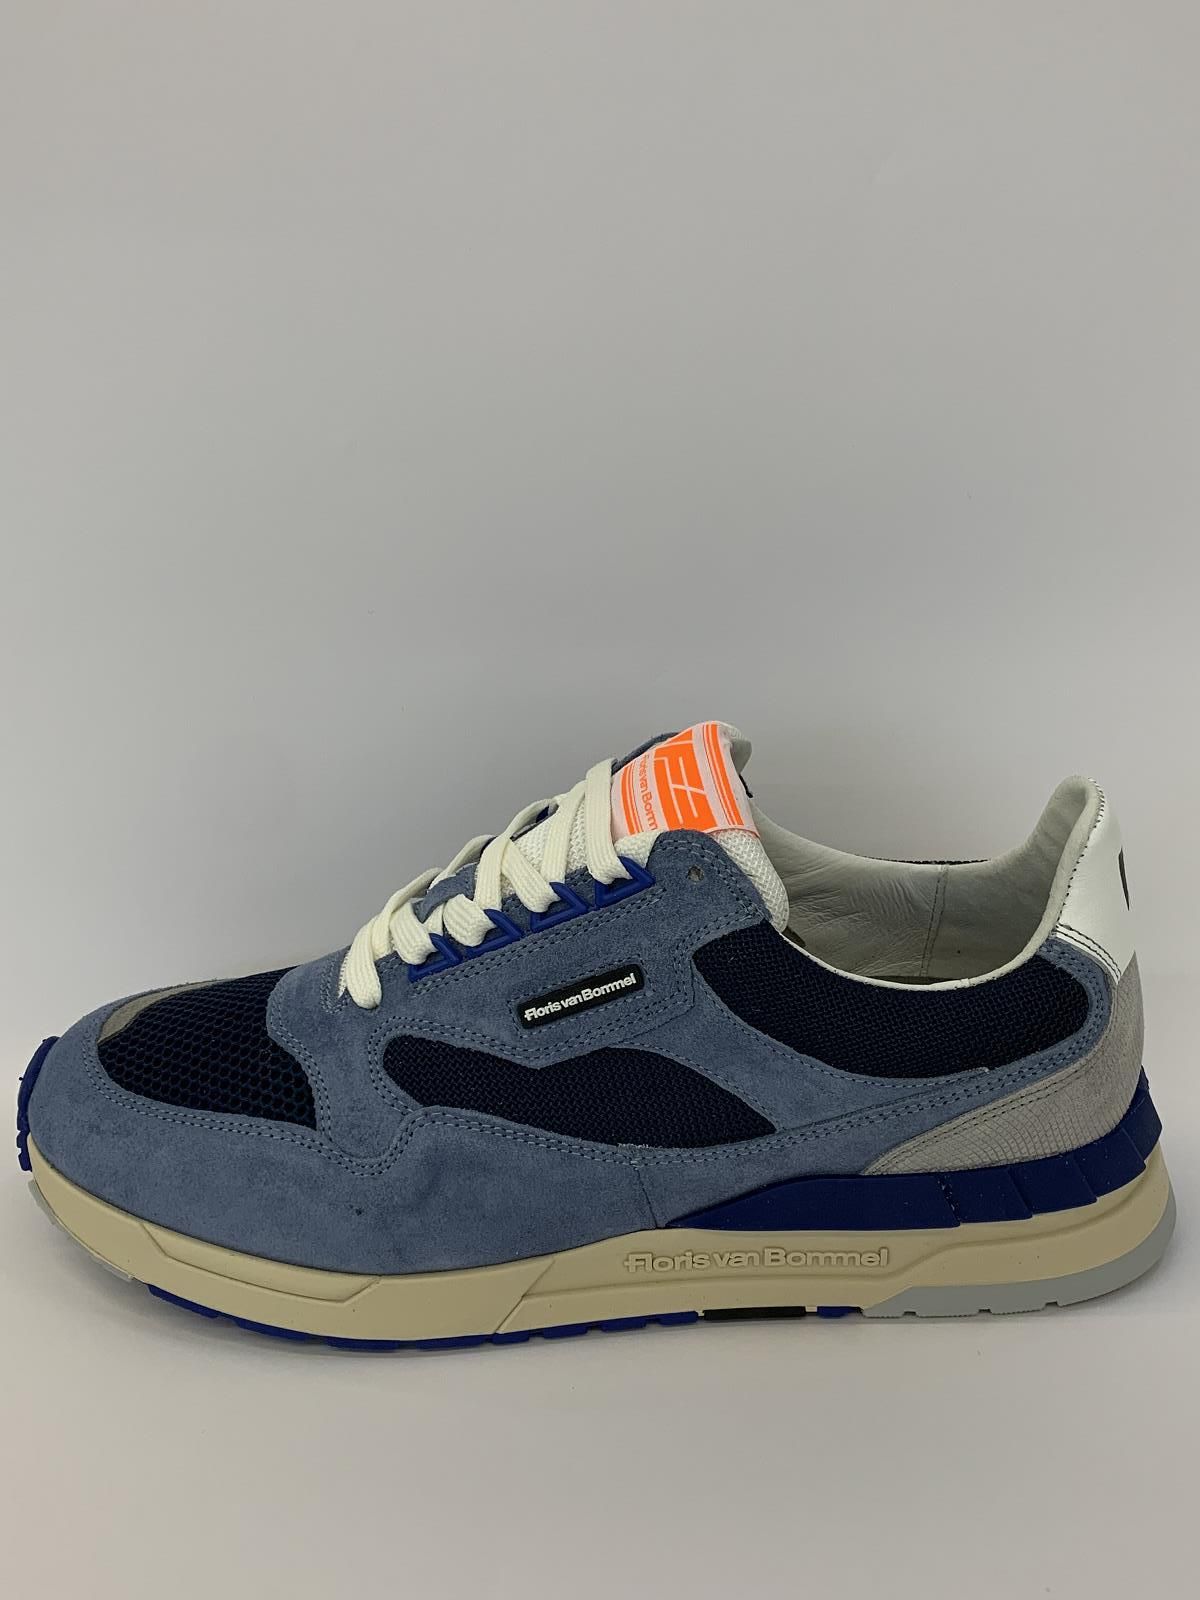 Van Bommel Sneaker Blauw+kleur heren (Sneaker Retro Lbl - 10119-40-01) - Schoenen Luca